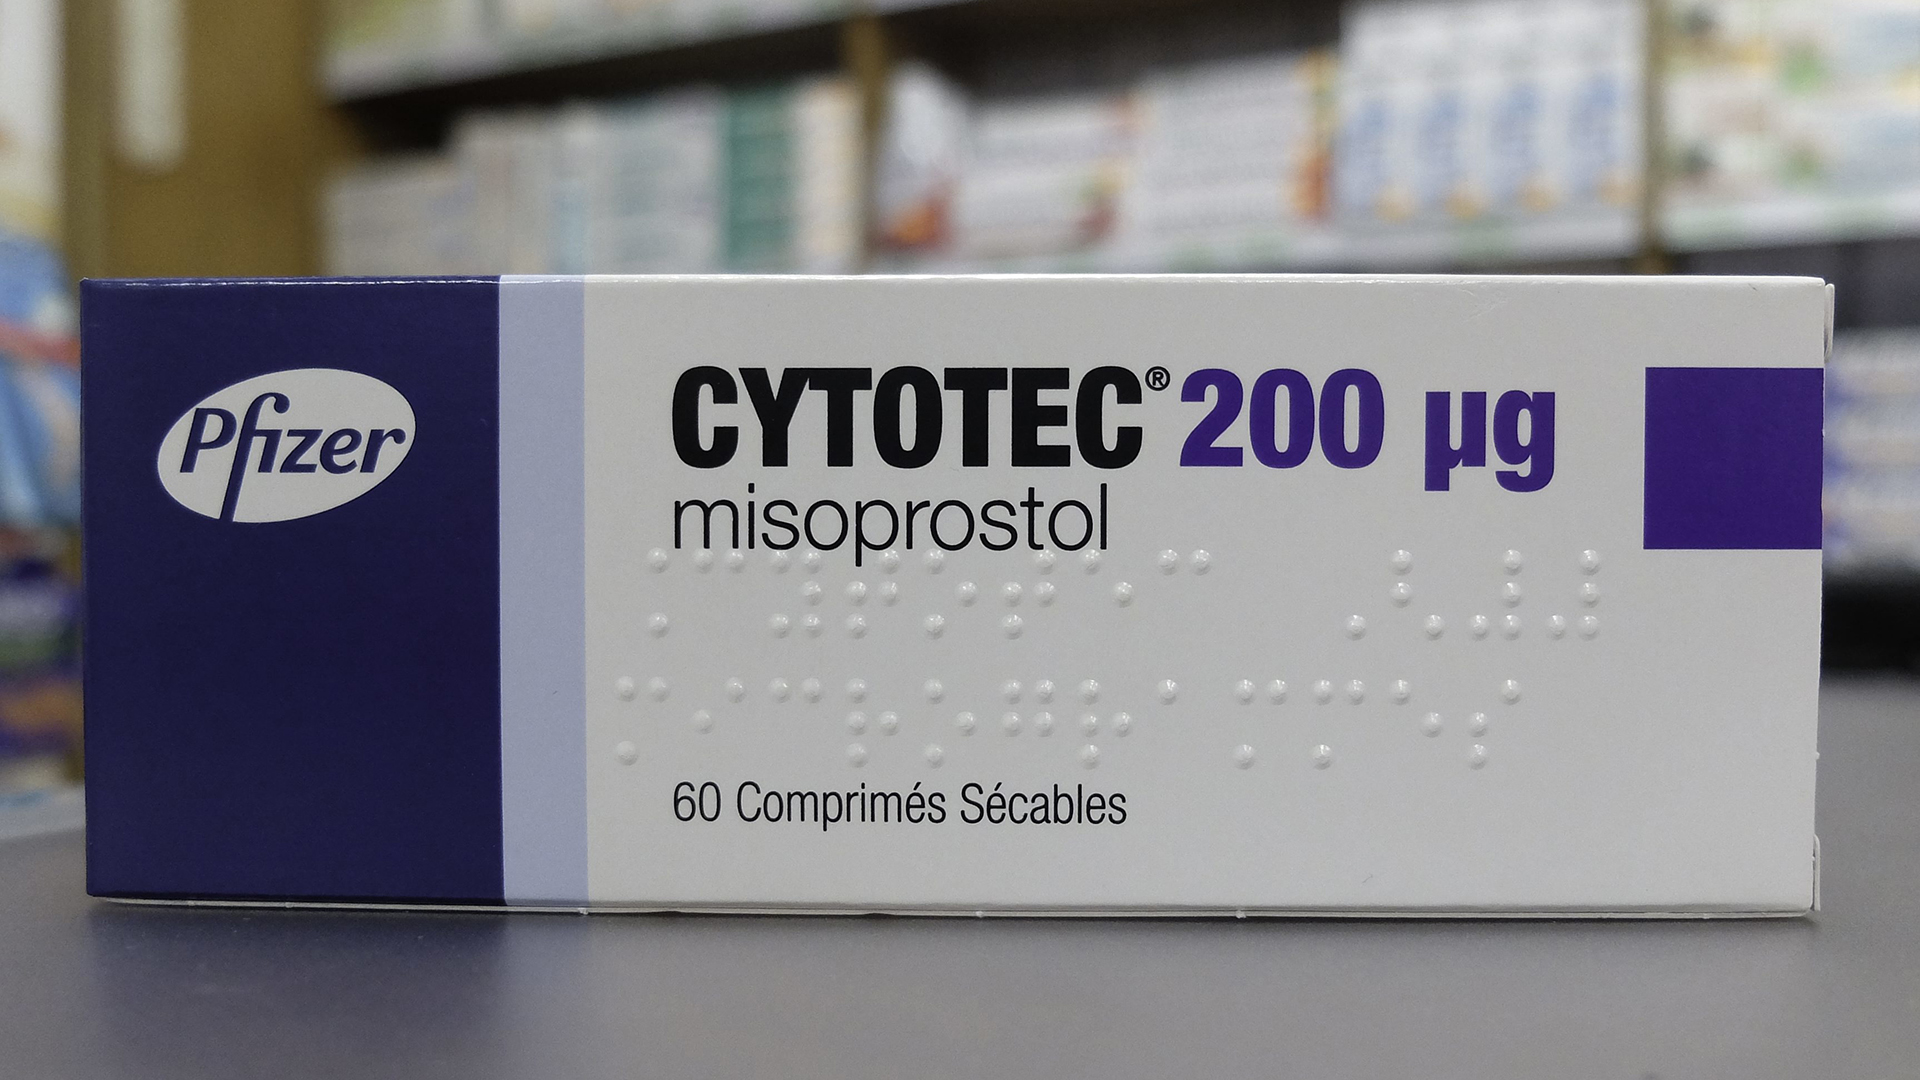 Das Medikament Cytotec